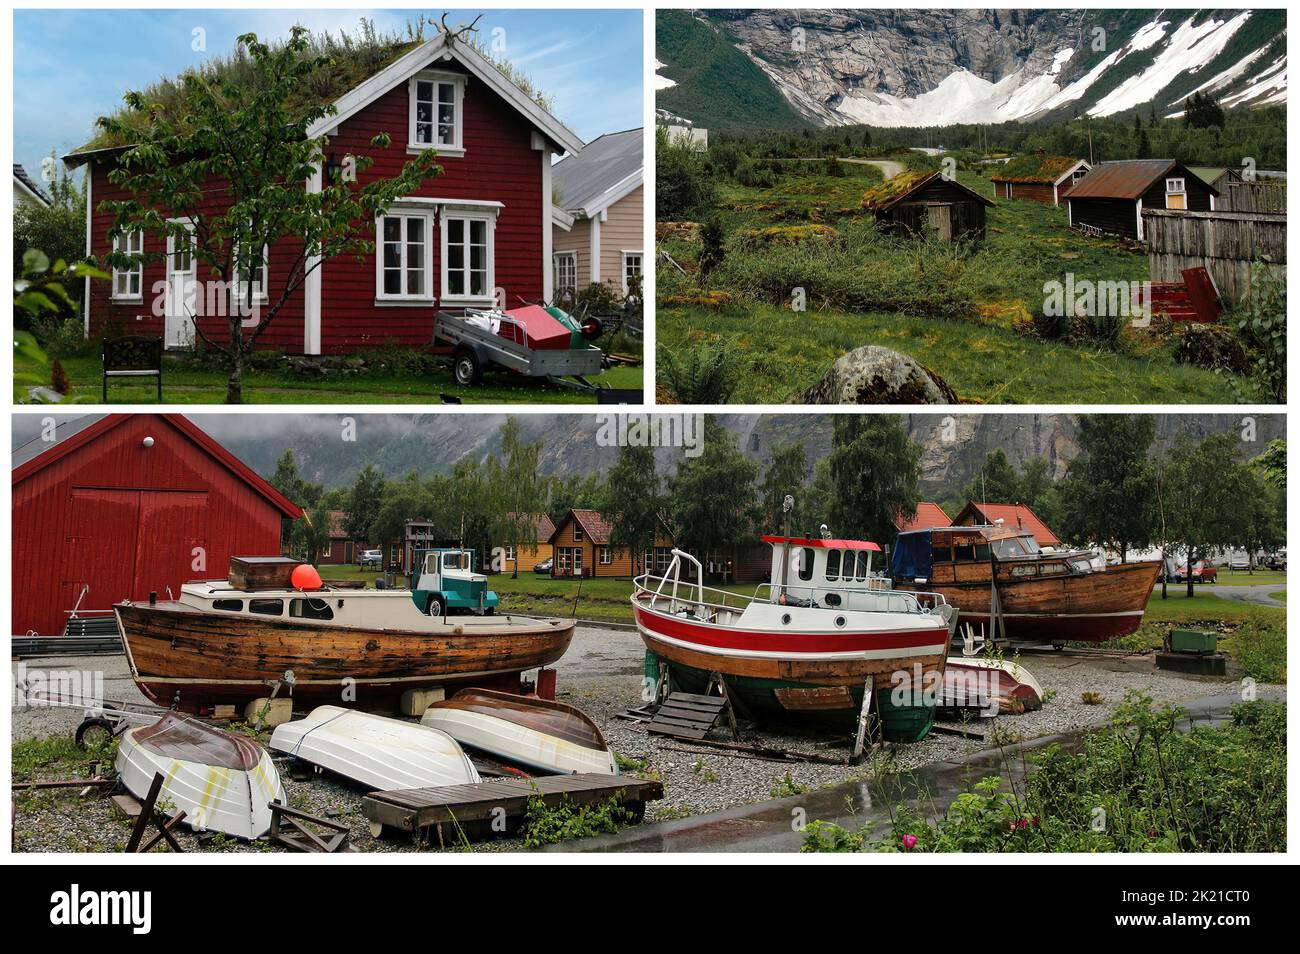 Paysages norvégiens - les maisons norvégiennes caractéristiques Banque D'Images